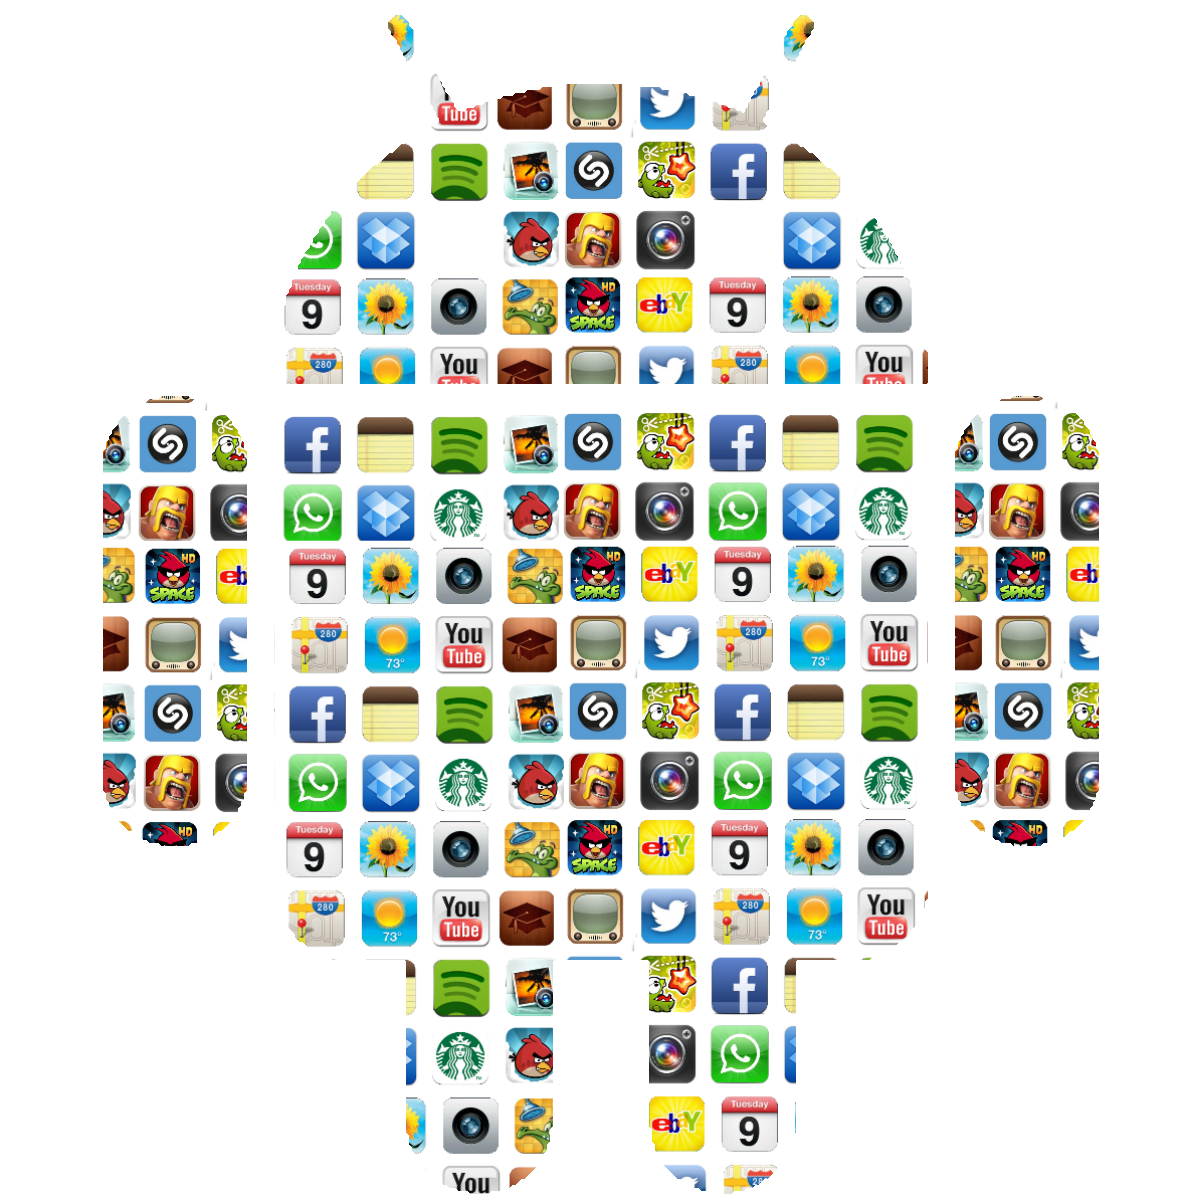 Gaming app apk. Иконки для приложений. Иконки приложений для андроид. Логотипы популярных приложений.